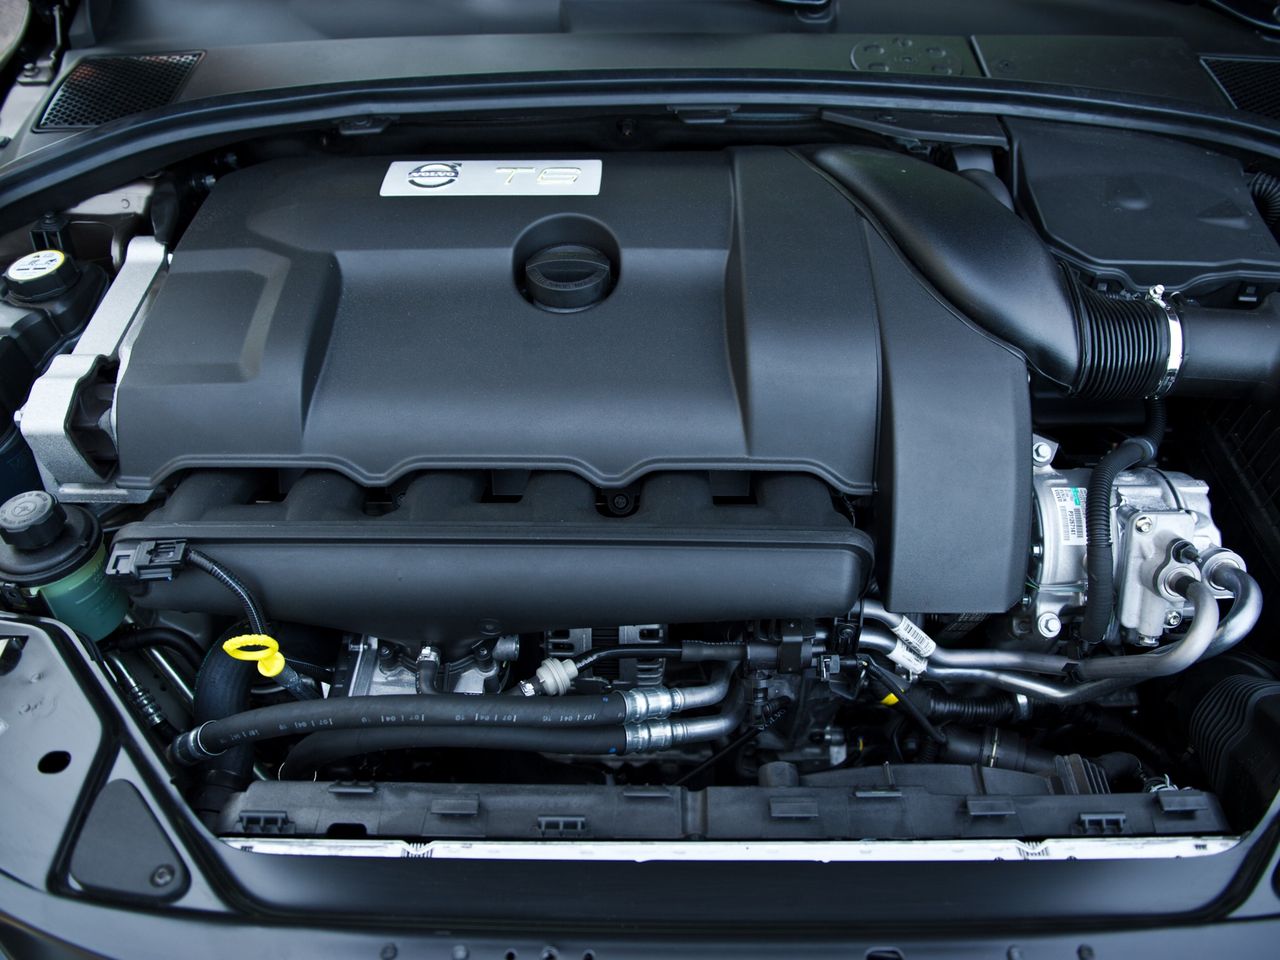 6-cylindrowy silnik T6 ma pojemność 3,0 litra i w mocniejszym wariancie ponad 300 KM.